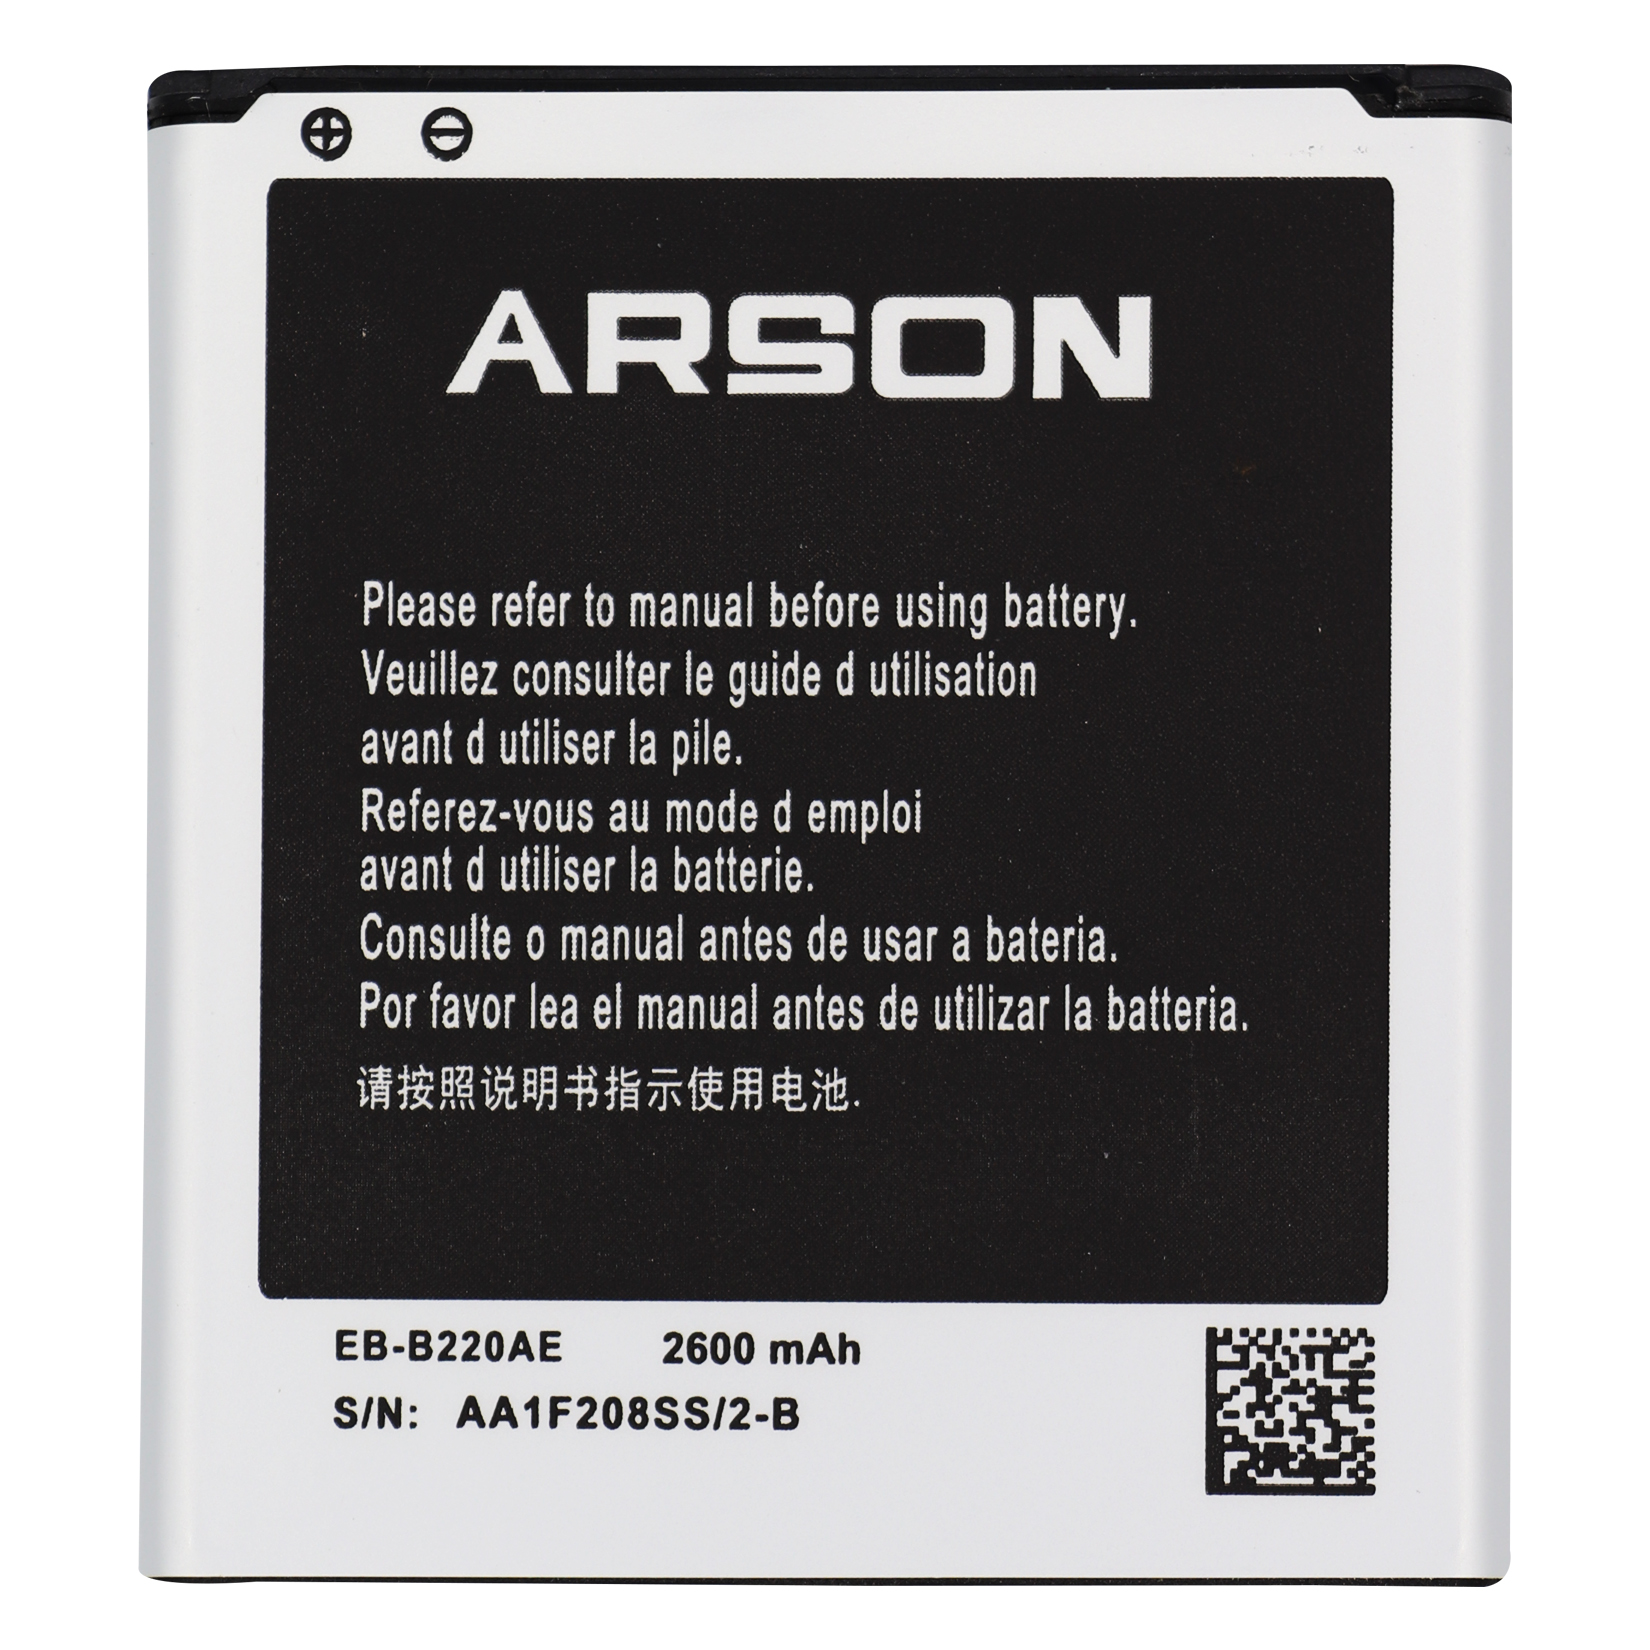 باتری موبایل آرسون مدل EB-B220AE ظرفیت 2600 میلی آمپرساعت مناسب برای گوشی موبایل سامسونگ Galaxy Grand 2 G7106 